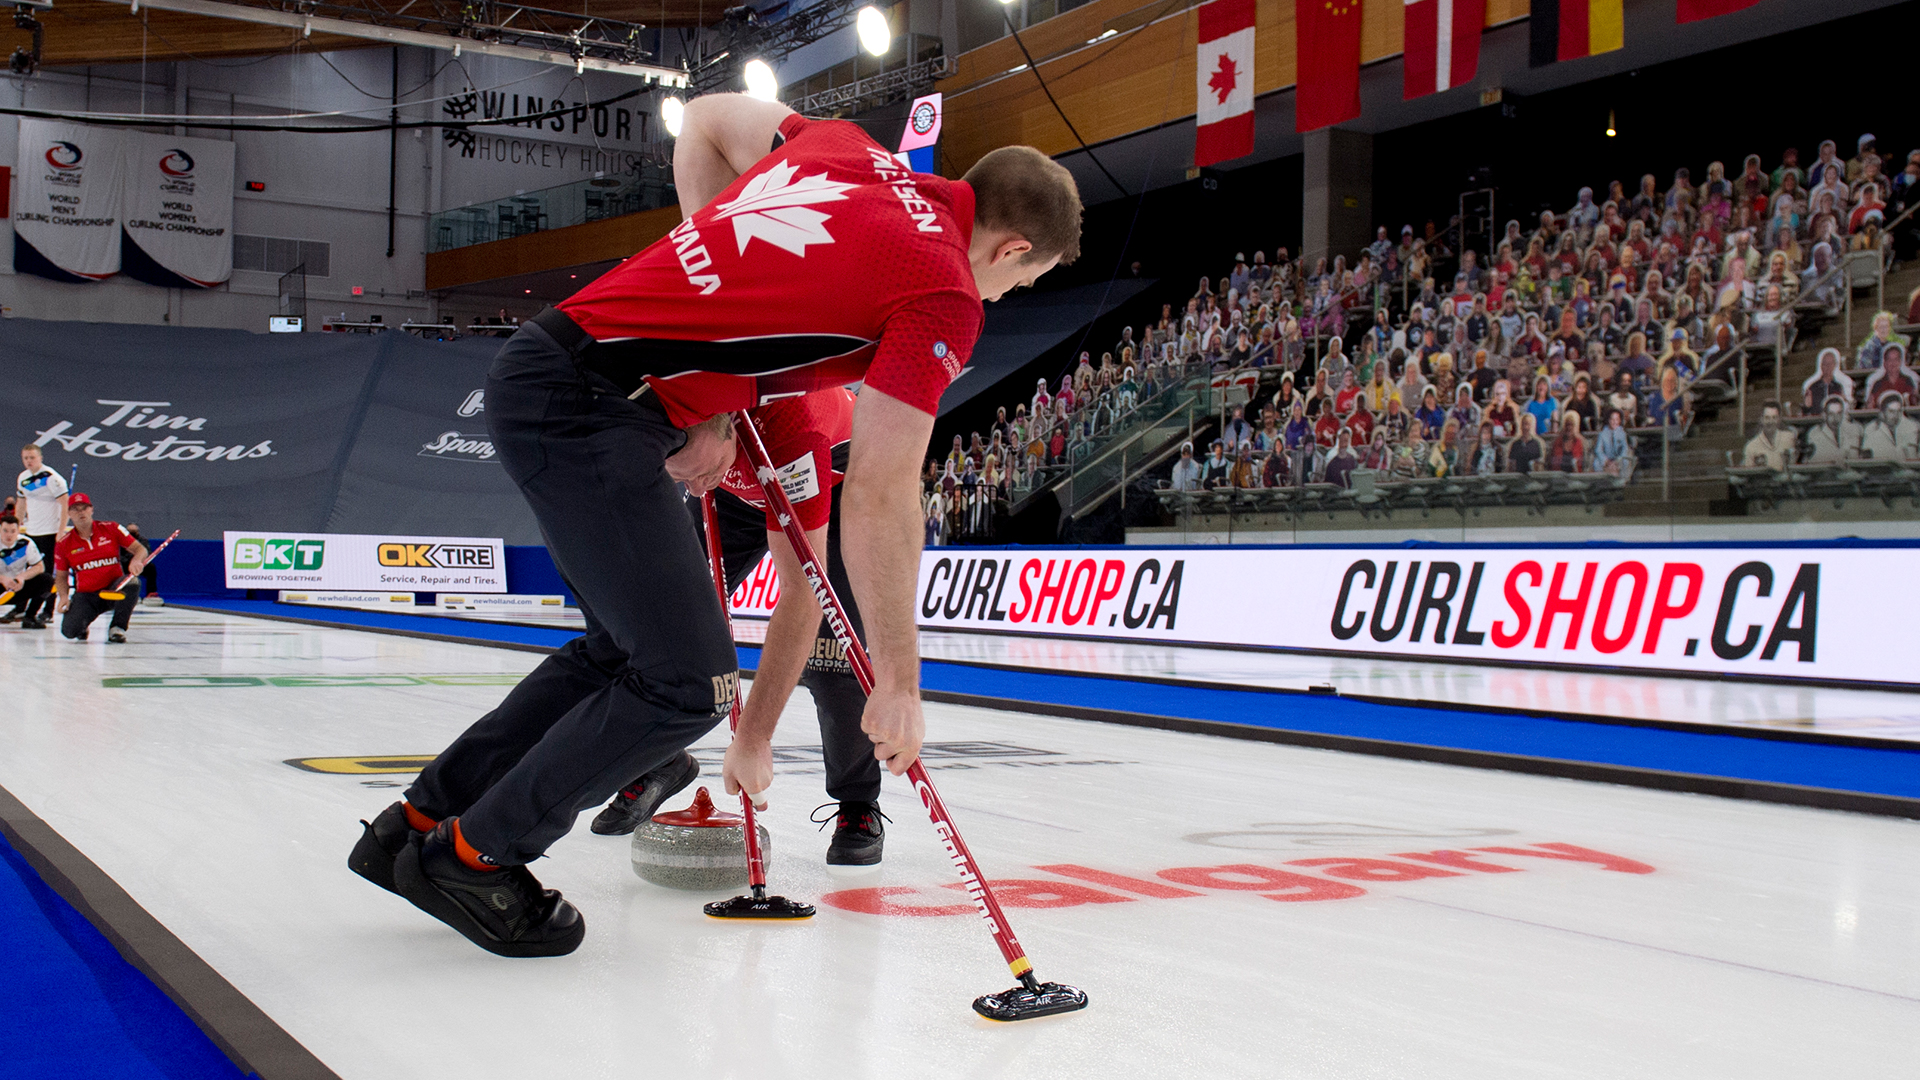 Calgary: Curling's Capital